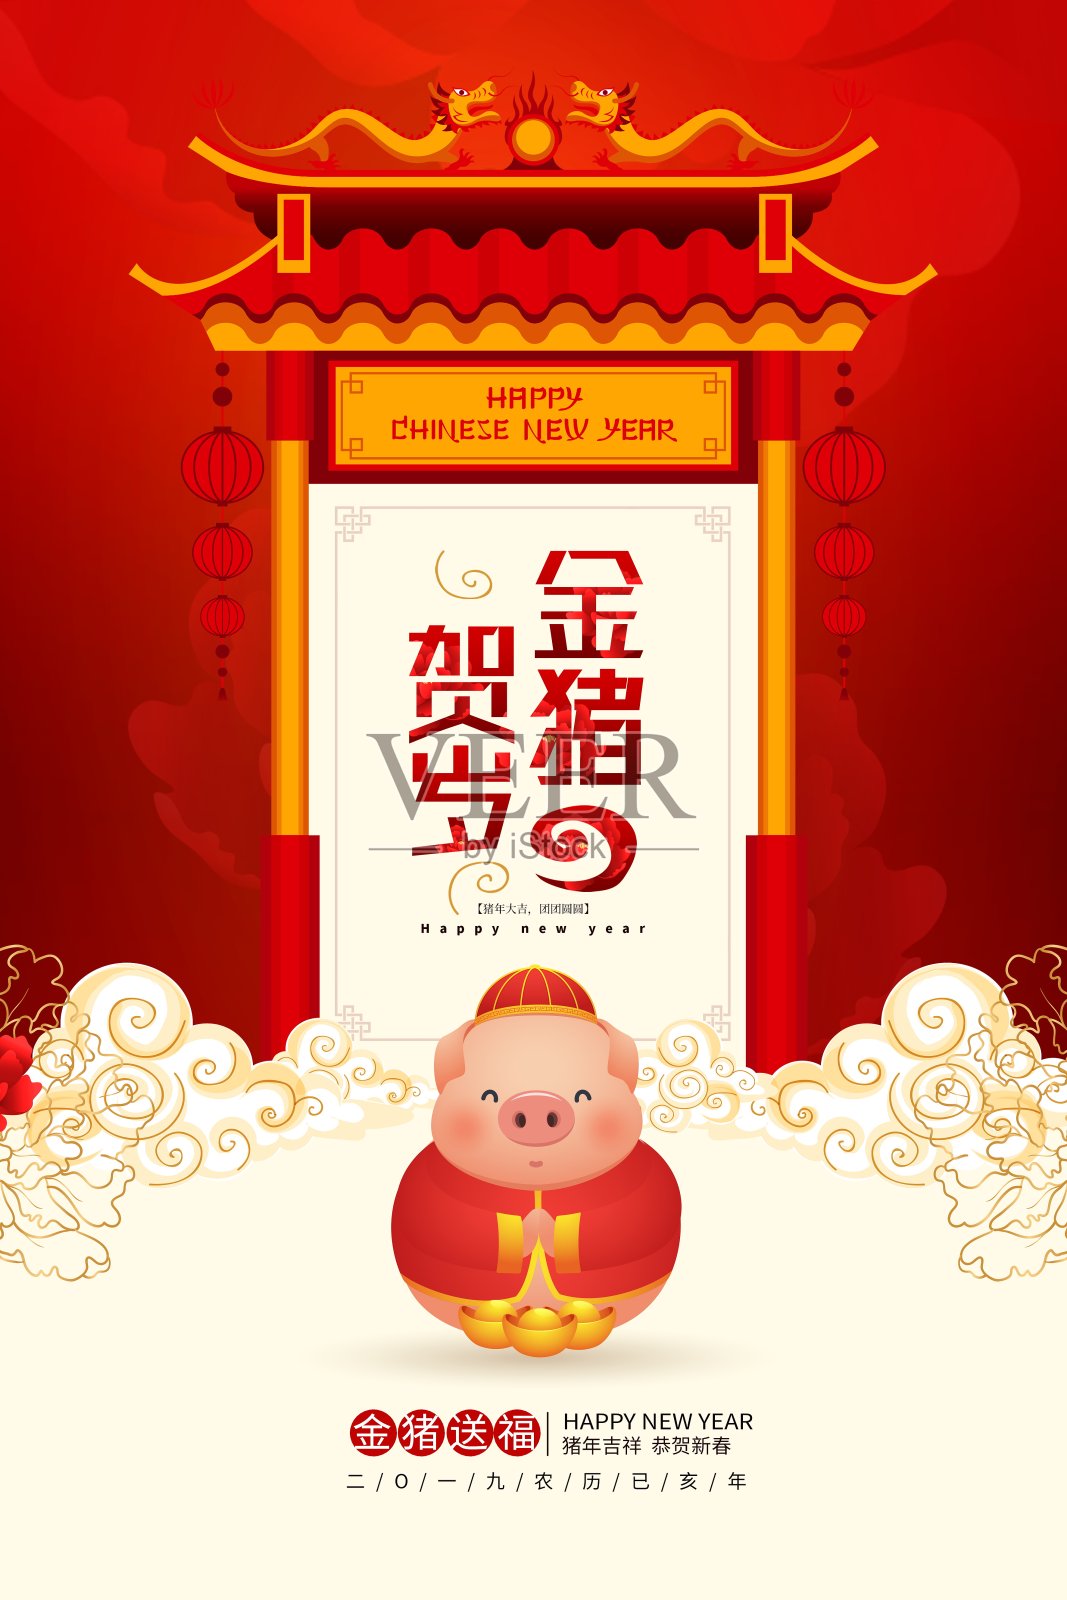 中国风金猪贺岁节日海报设计模板素材